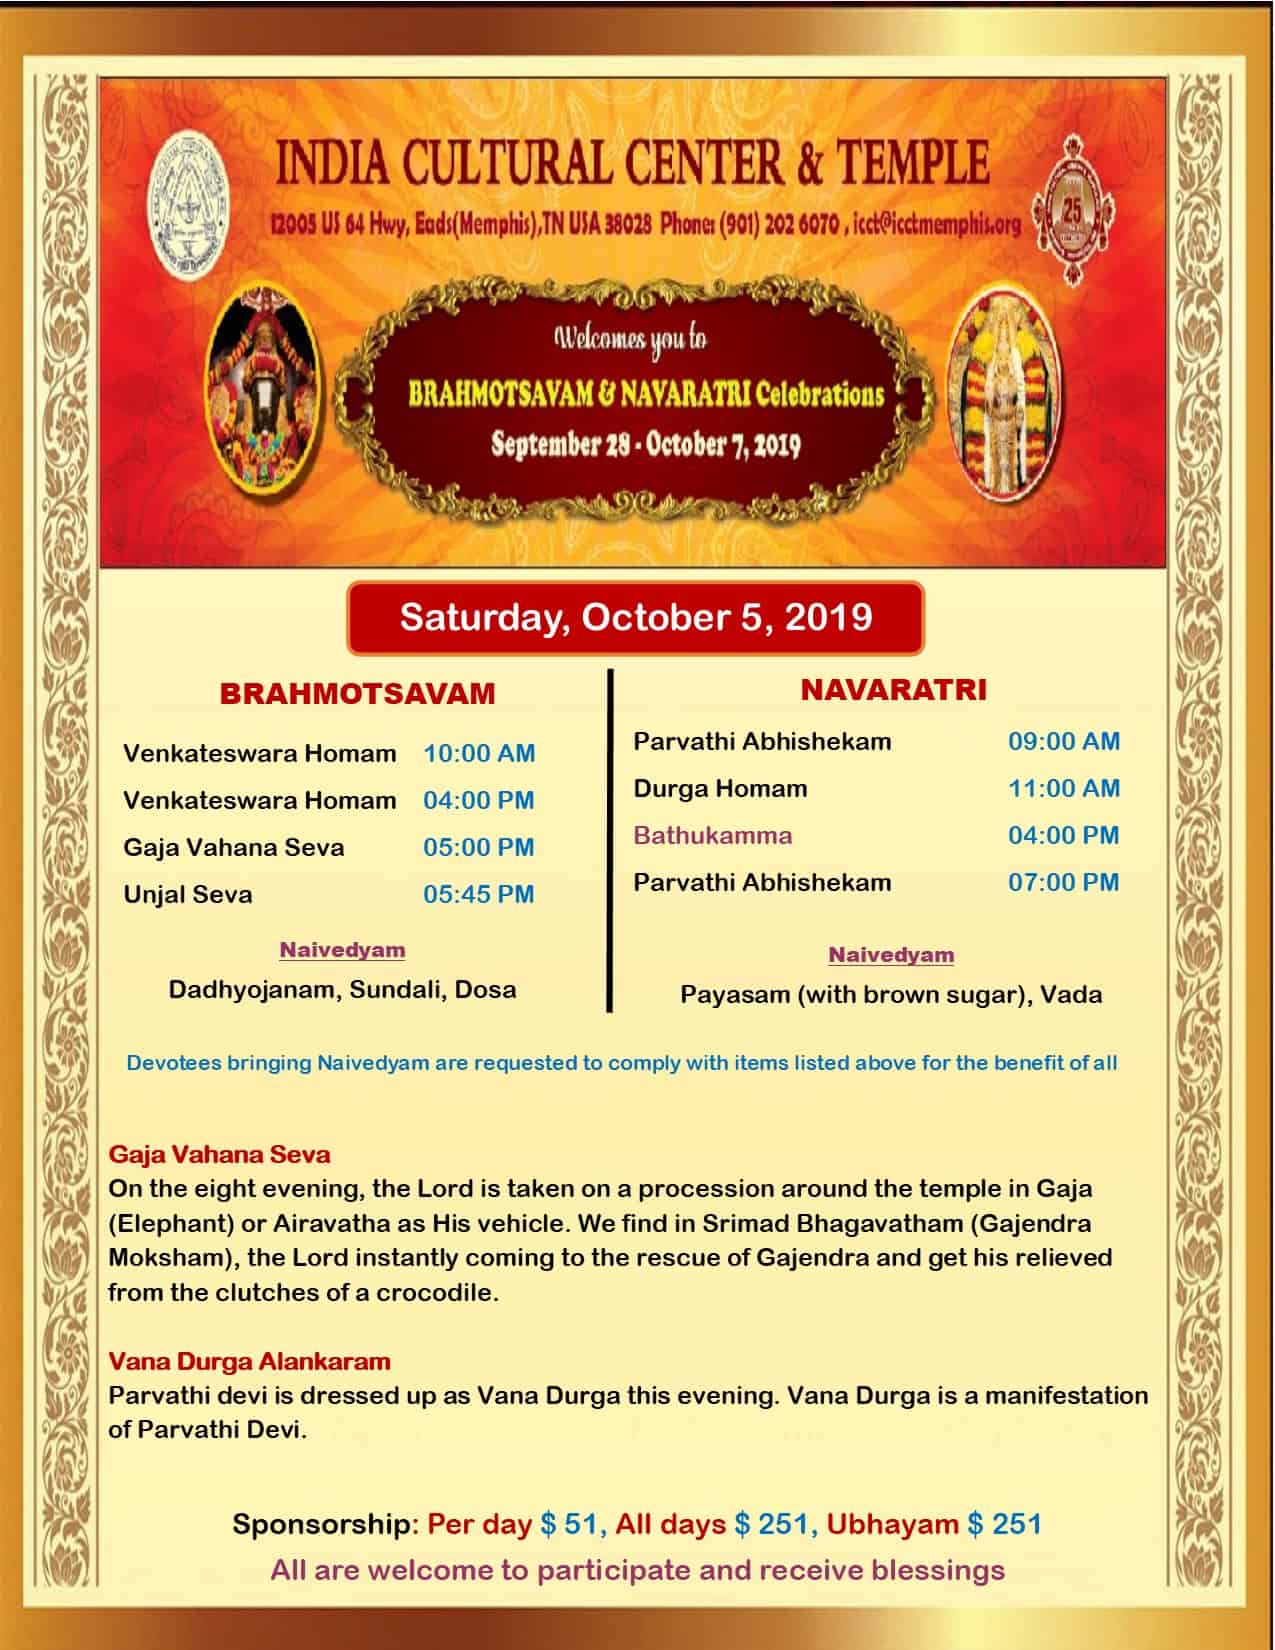 Brahmotsavam and Navaratri Celebrations